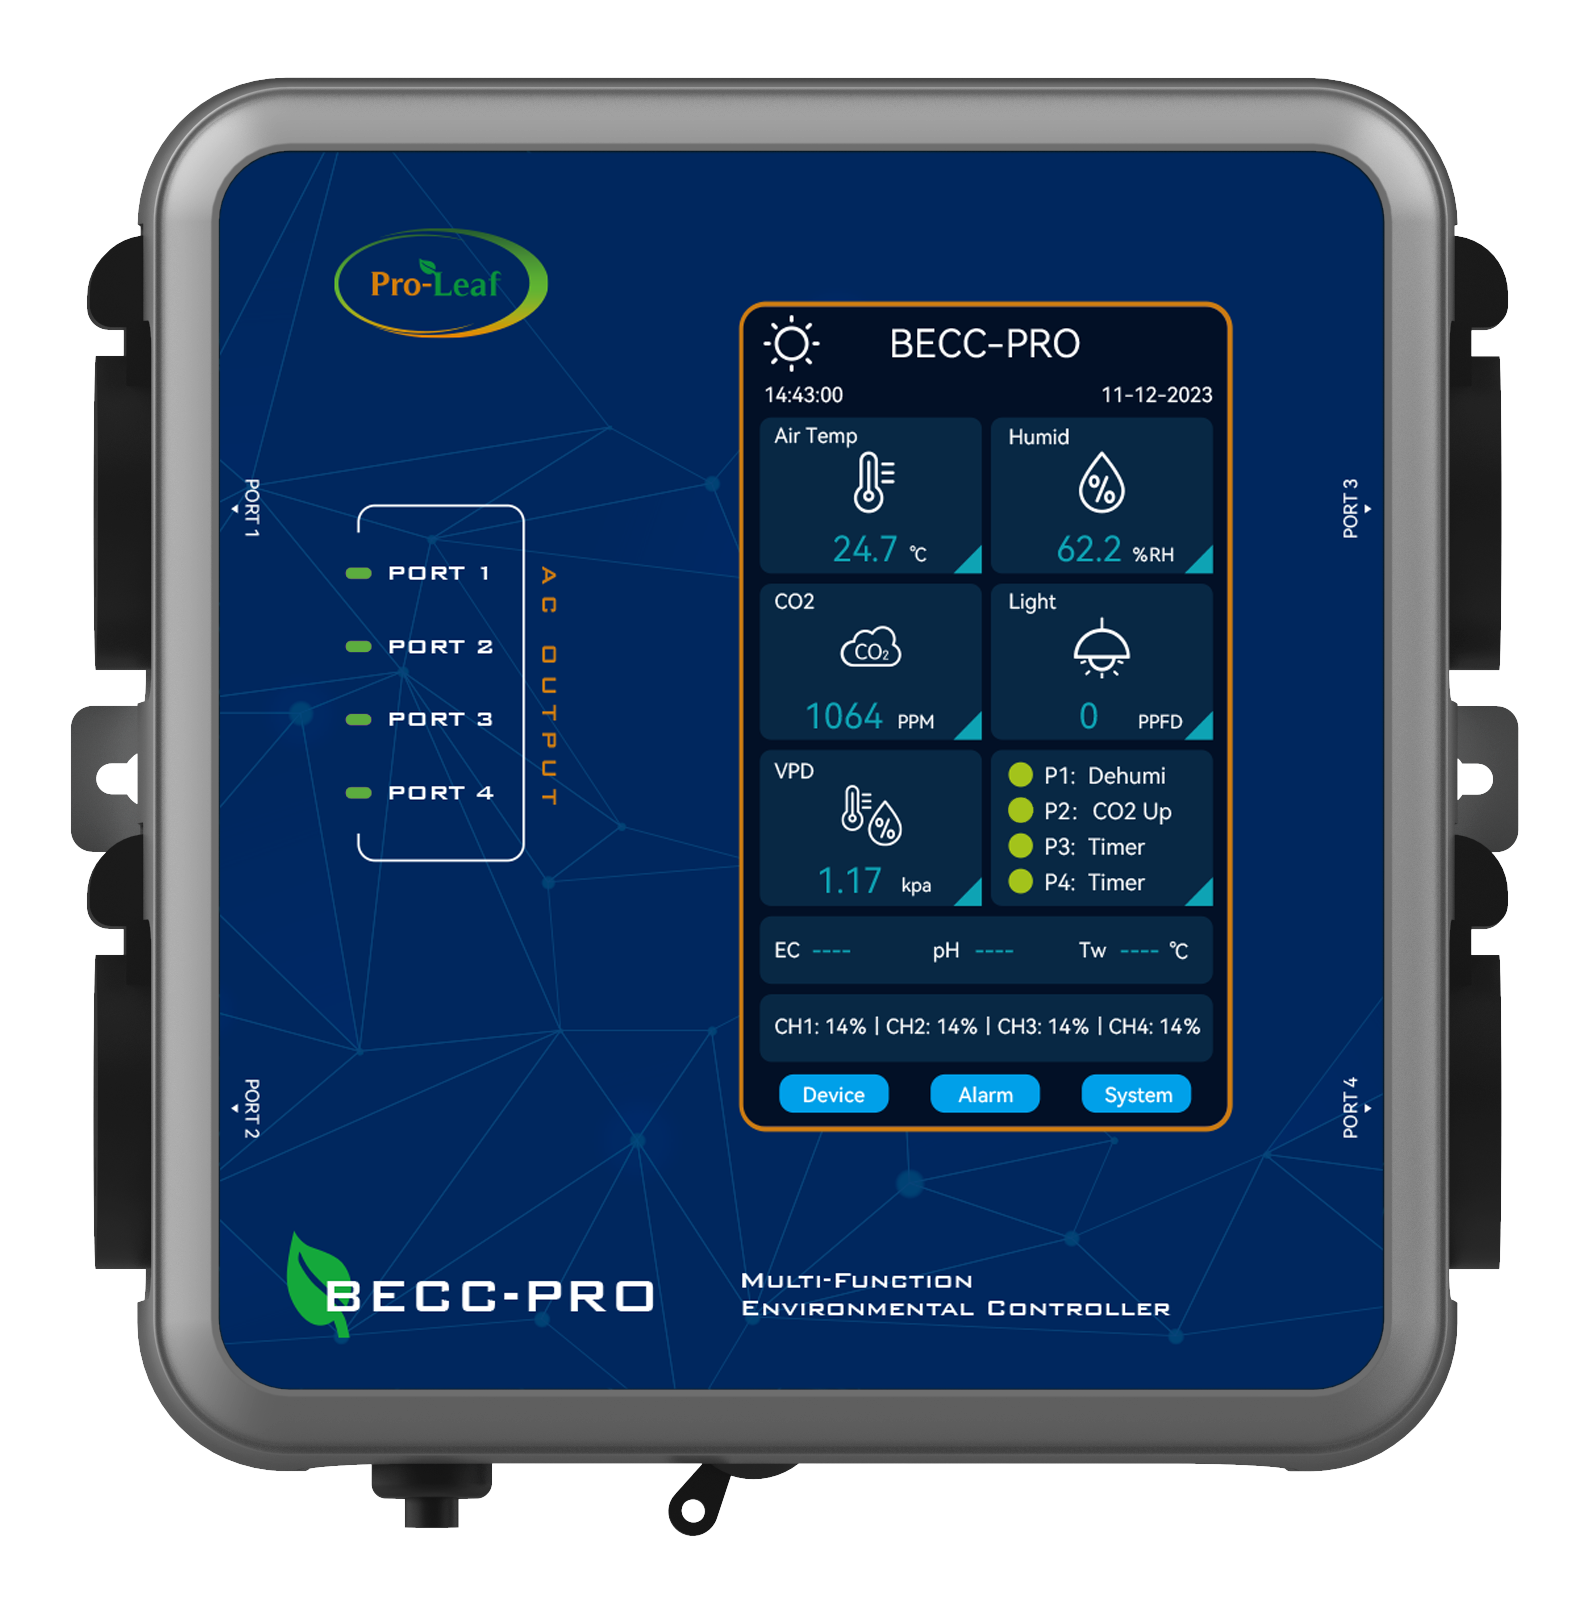 BECC-PRO Environmental Controller